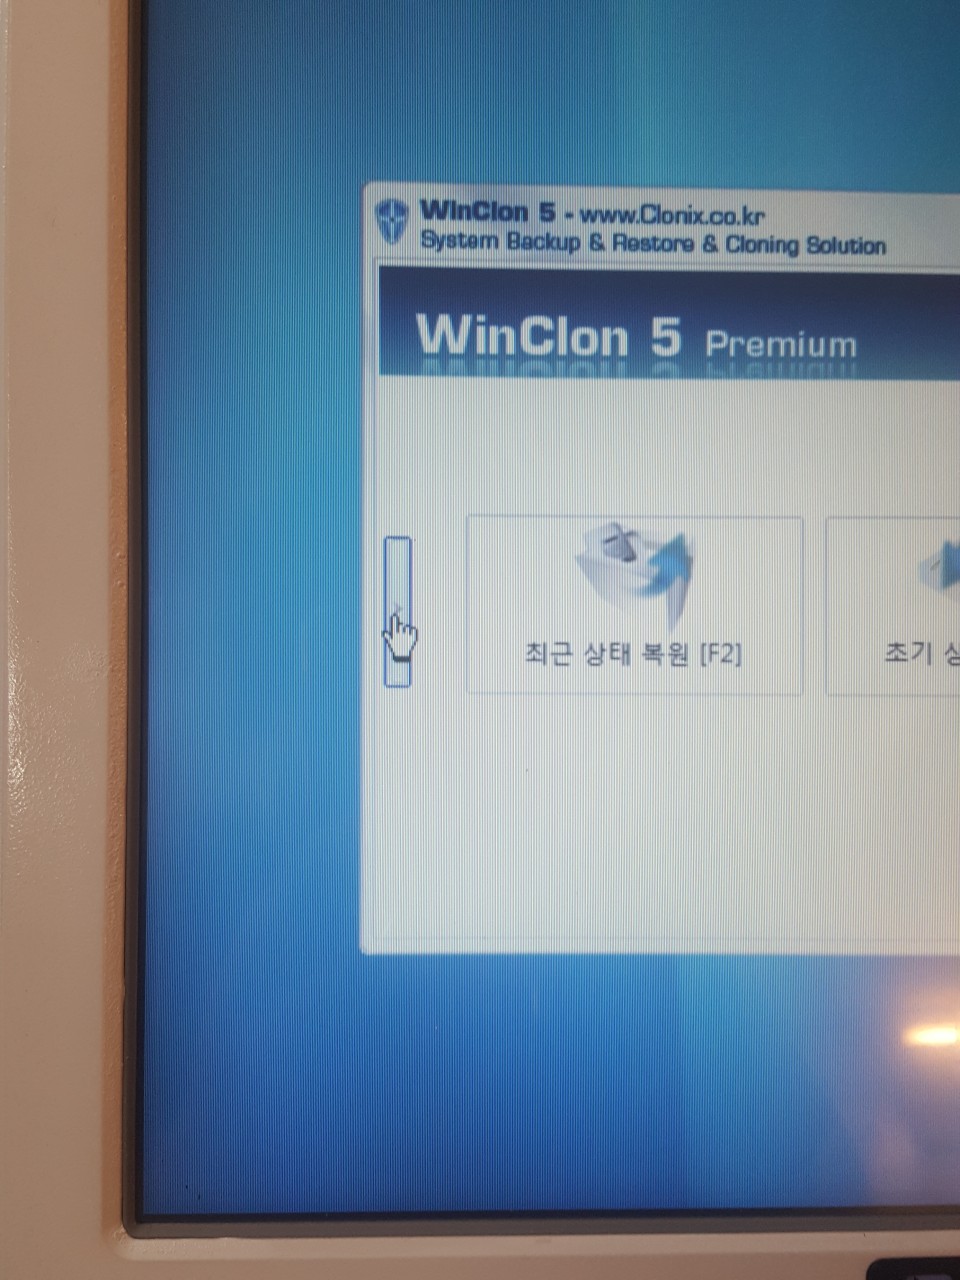 winclon 5 premium